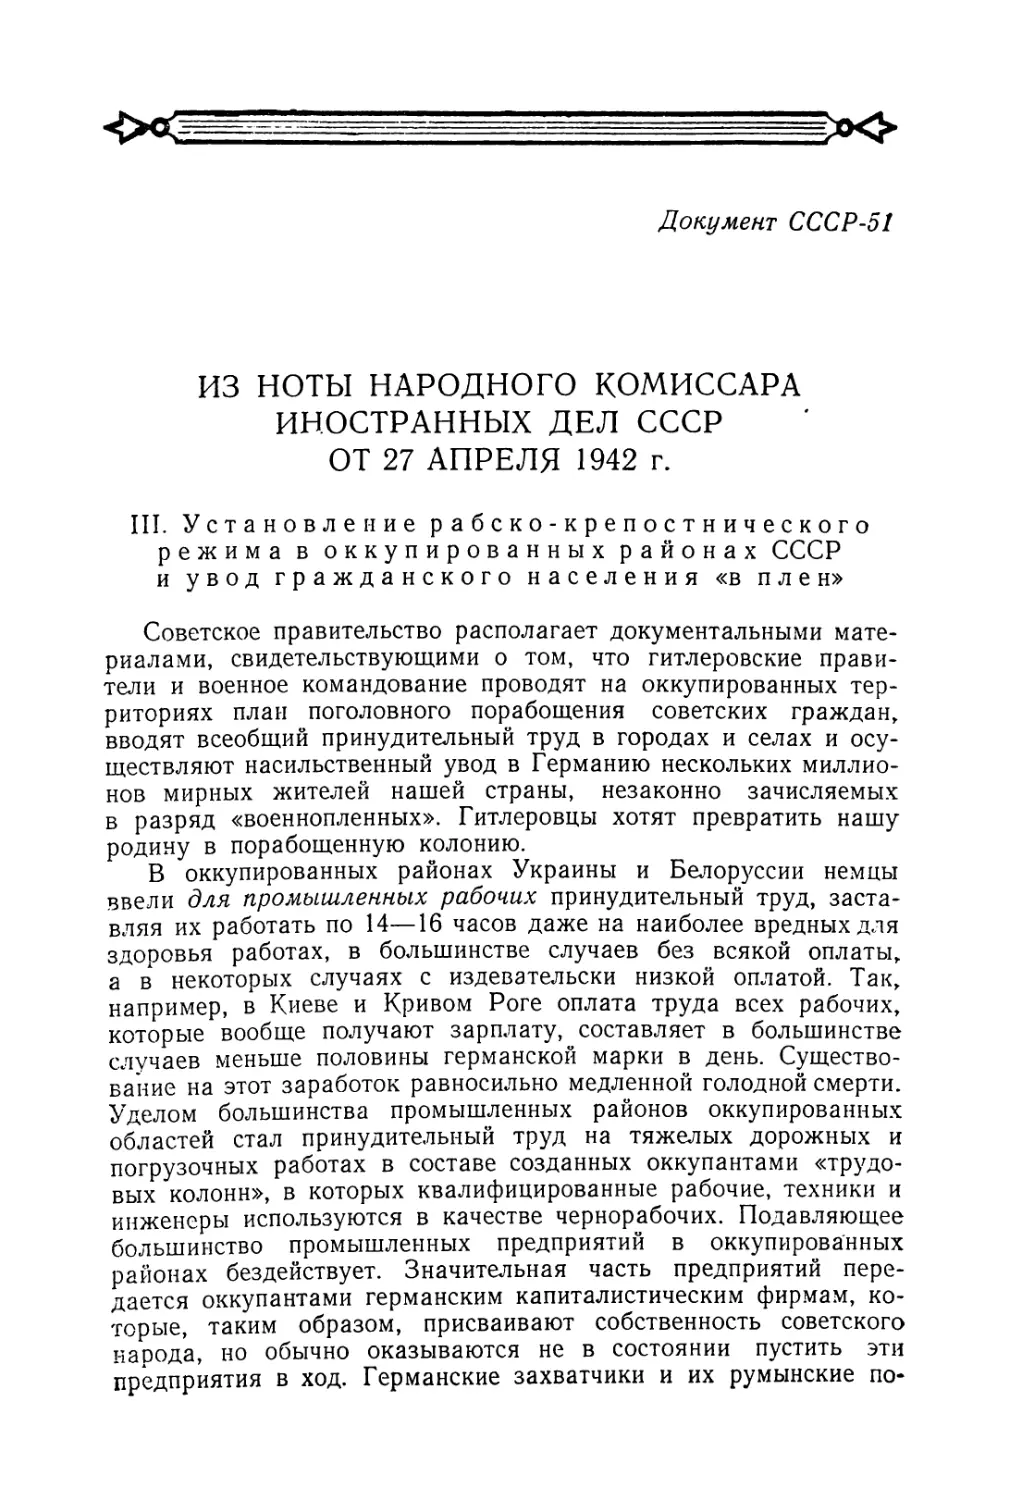 Из ноты Народного комиссара иностранных дел СССР от 27 апреля 1942 г. по поводу установления рабско-крепостнического режима в оккупированных районах СССР